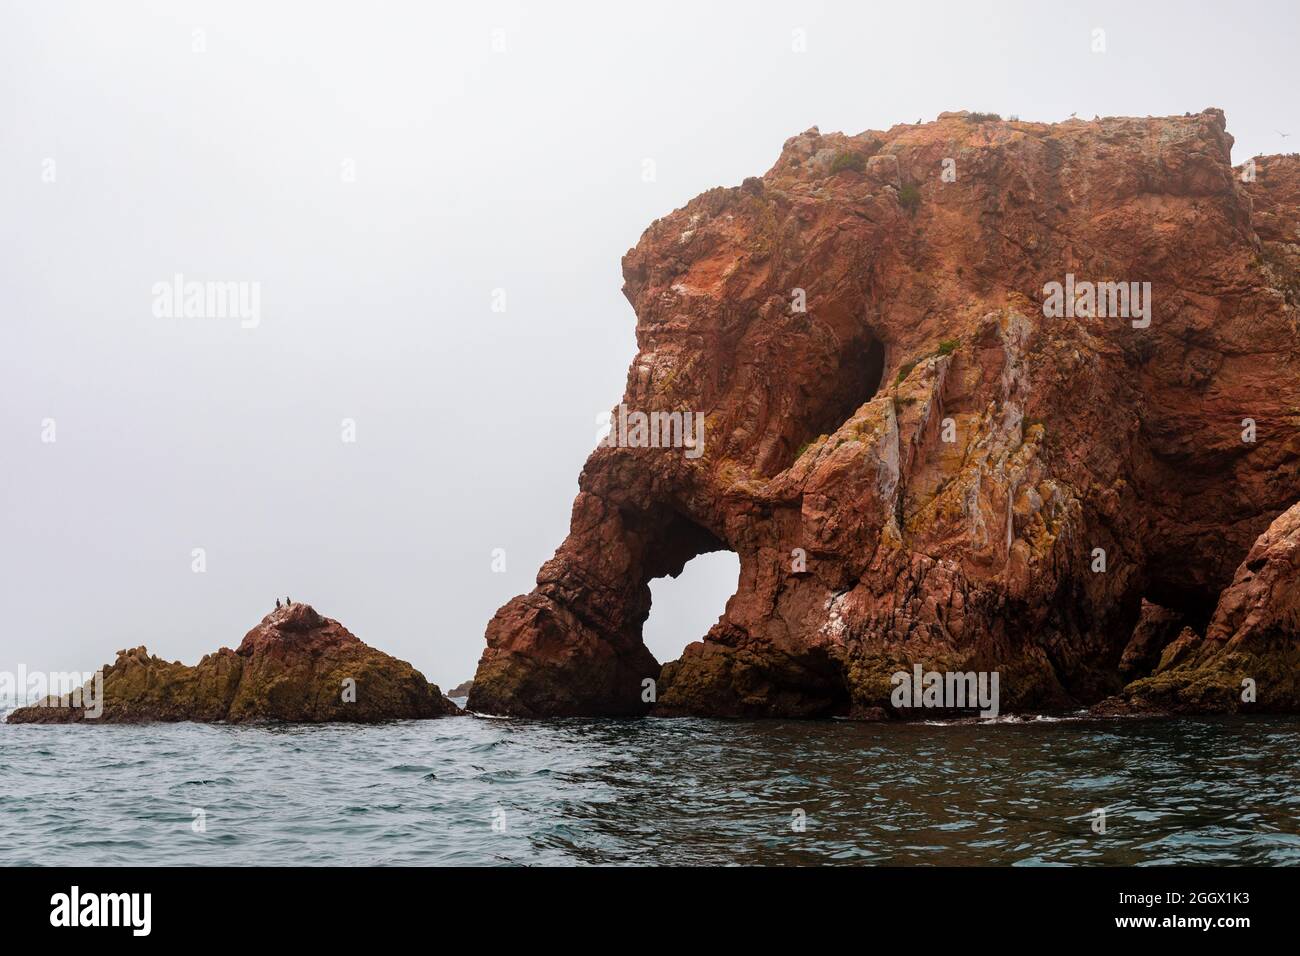 Formation rocheuse de Elephant Head, dans l'île de Berlenga Grande, archipel de Berlengas, Portugal. Banque D'Images